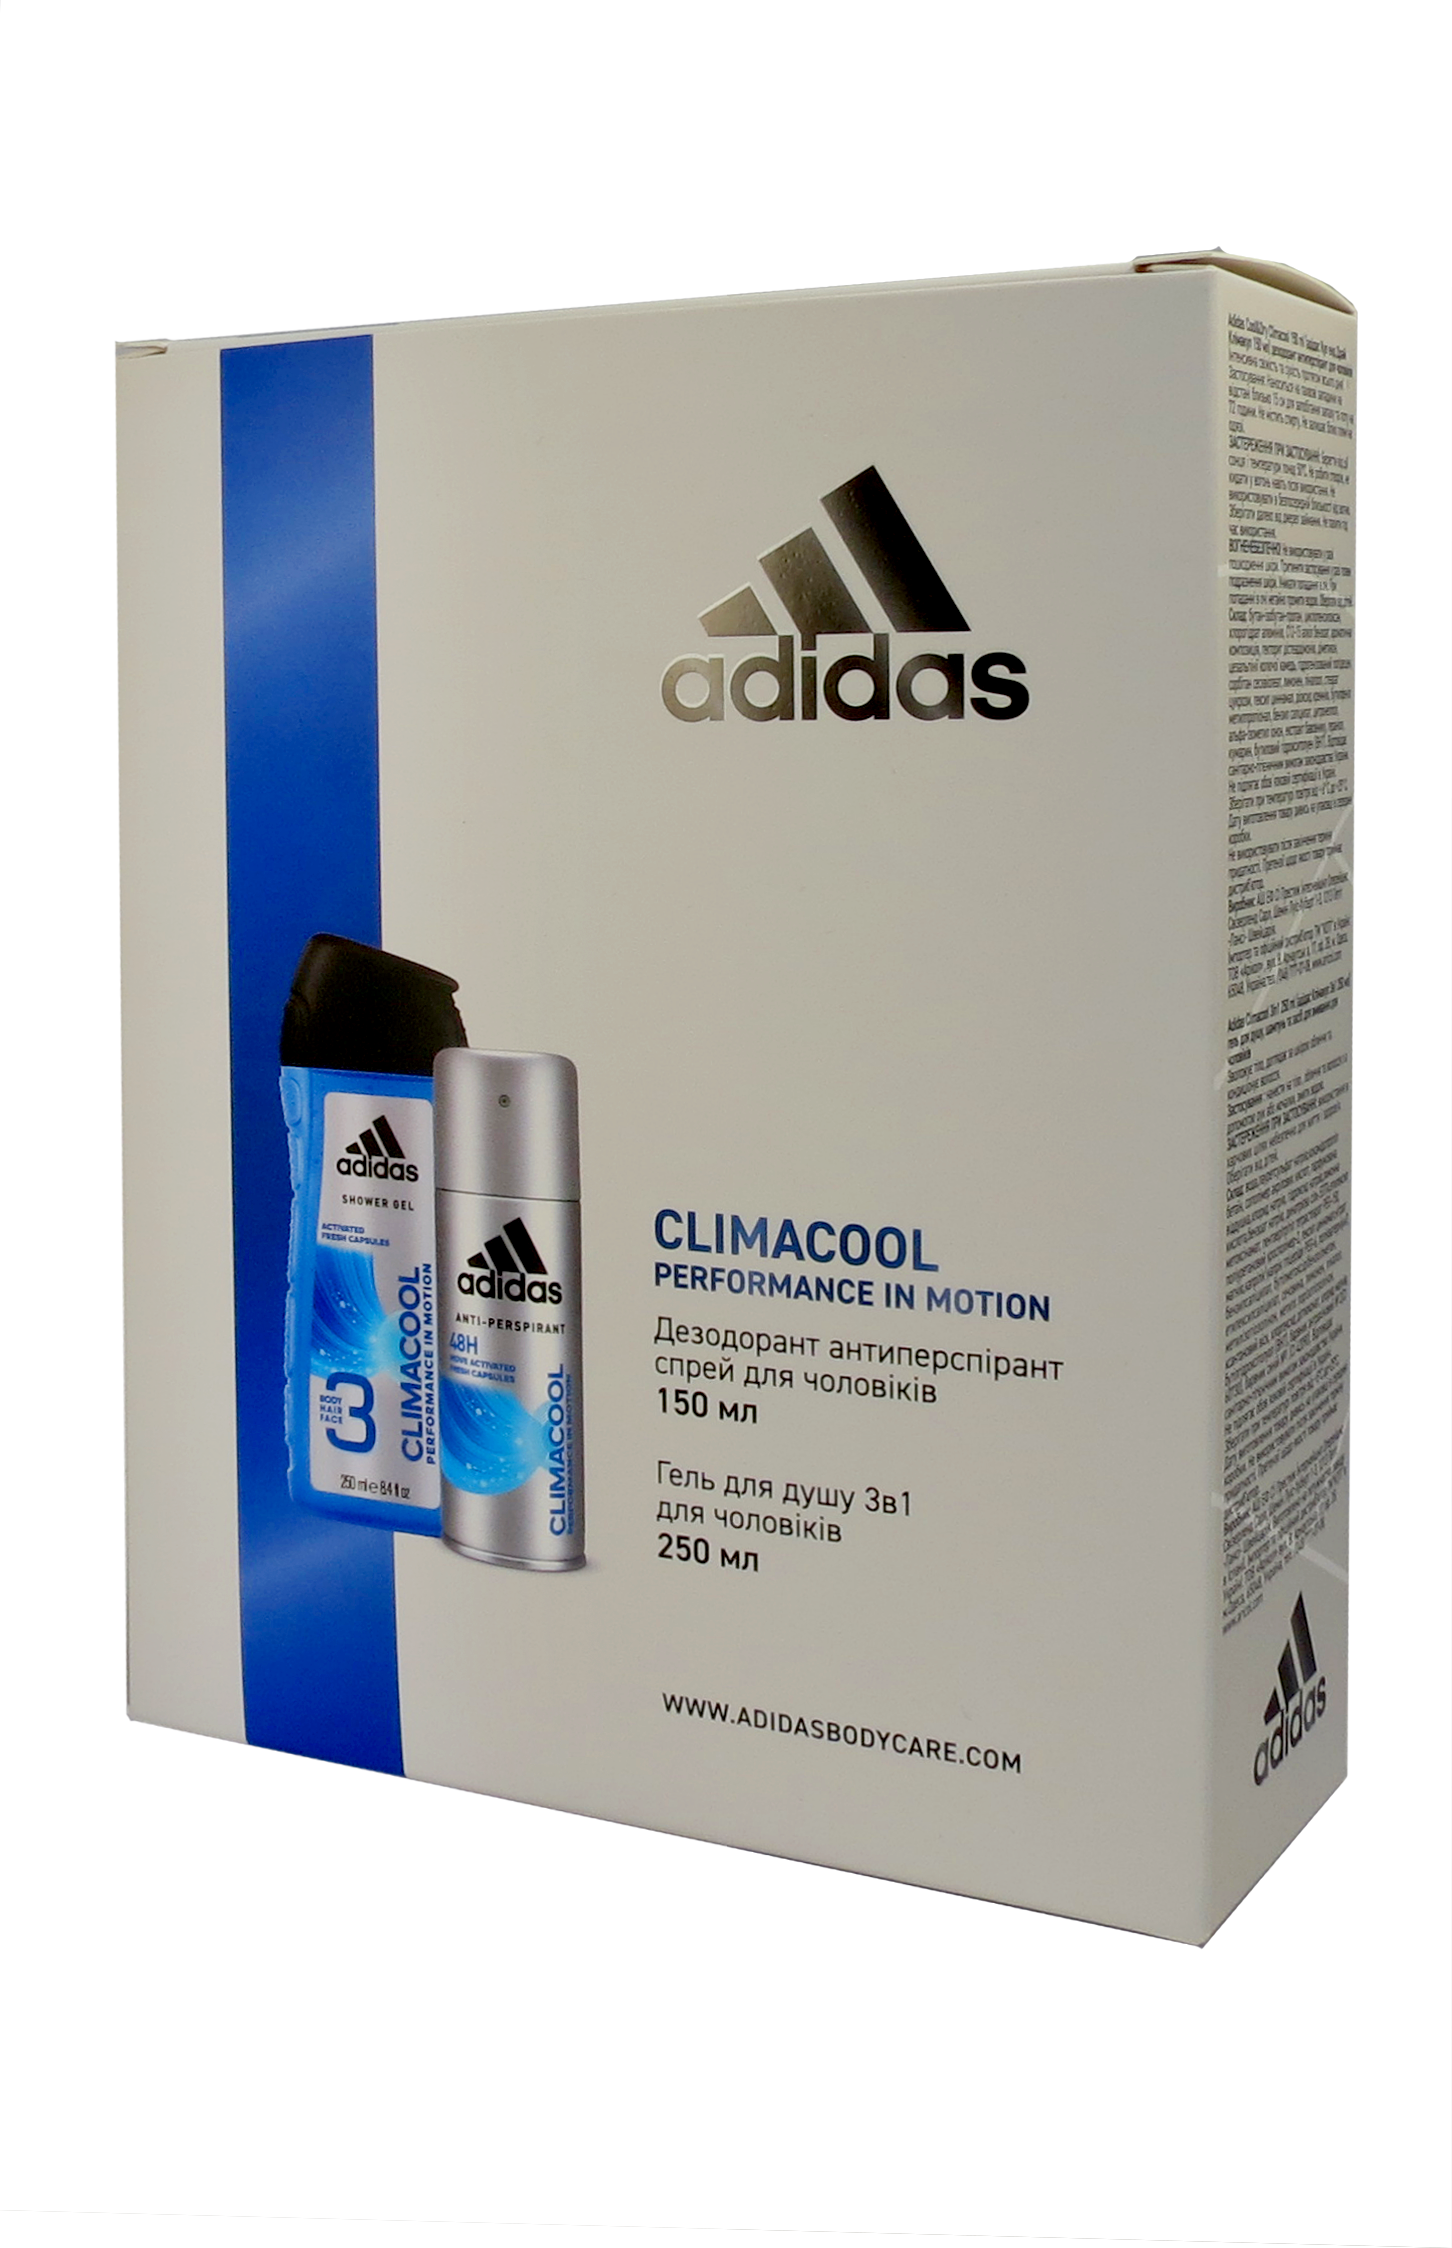 Набор для мужчин Adidas 2020 Дезодорант-антиперспирант Climacool 150 мл + Гель для душа 3in1 Body hair and face 250 мл - фото 1